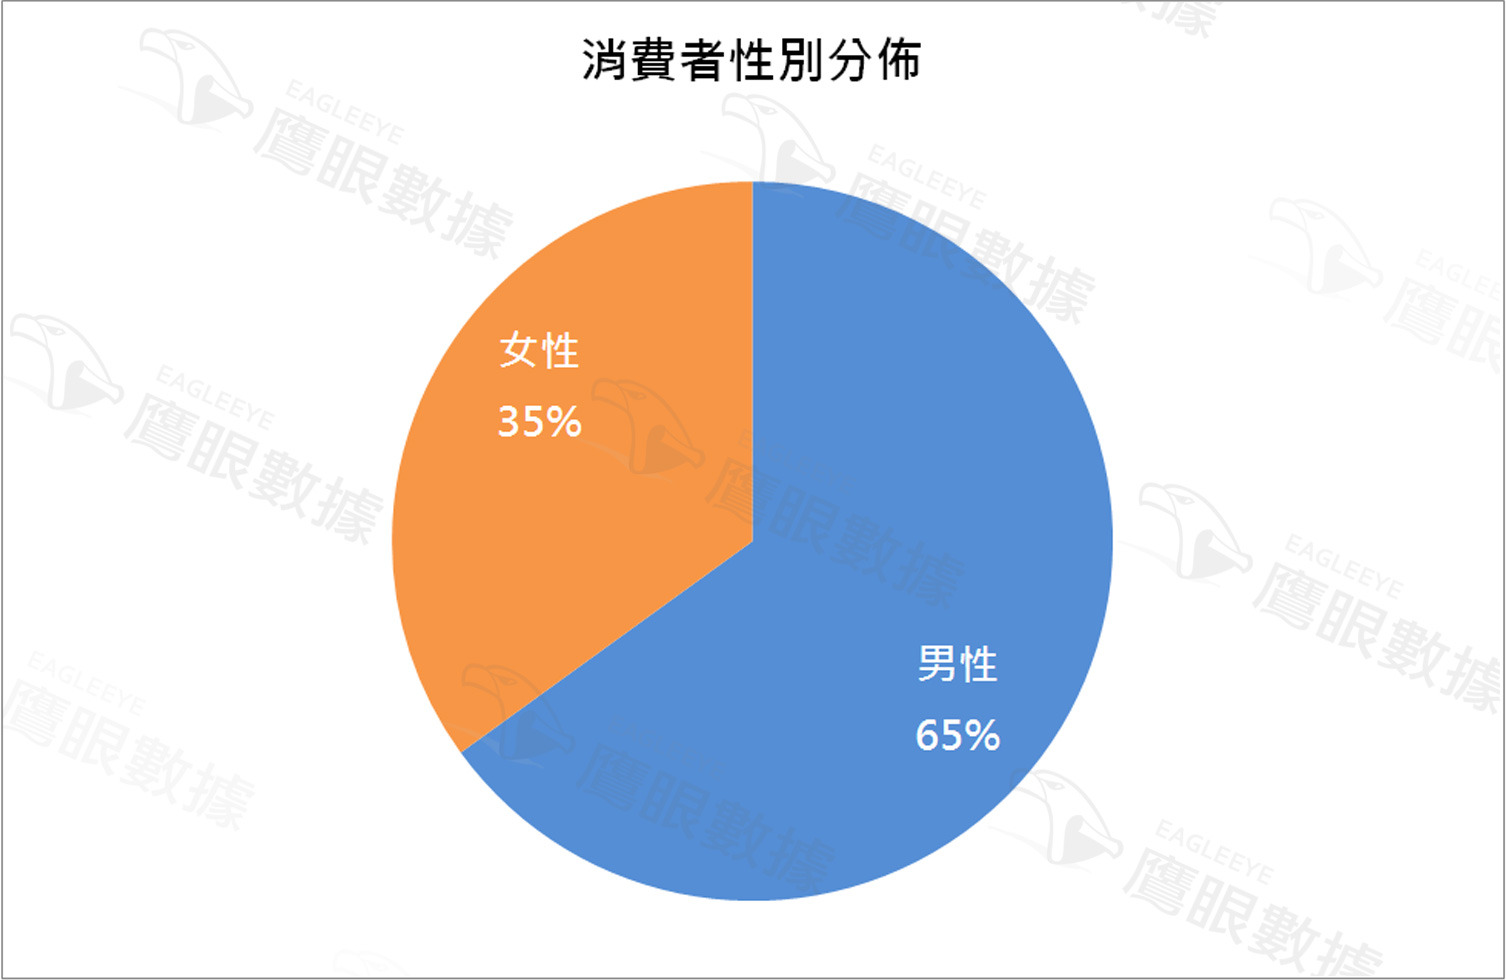 〈2015年4月〉台灣網路消費者對吸塵器購買行為與通路分析-EAGLEEYE鷹眼數據